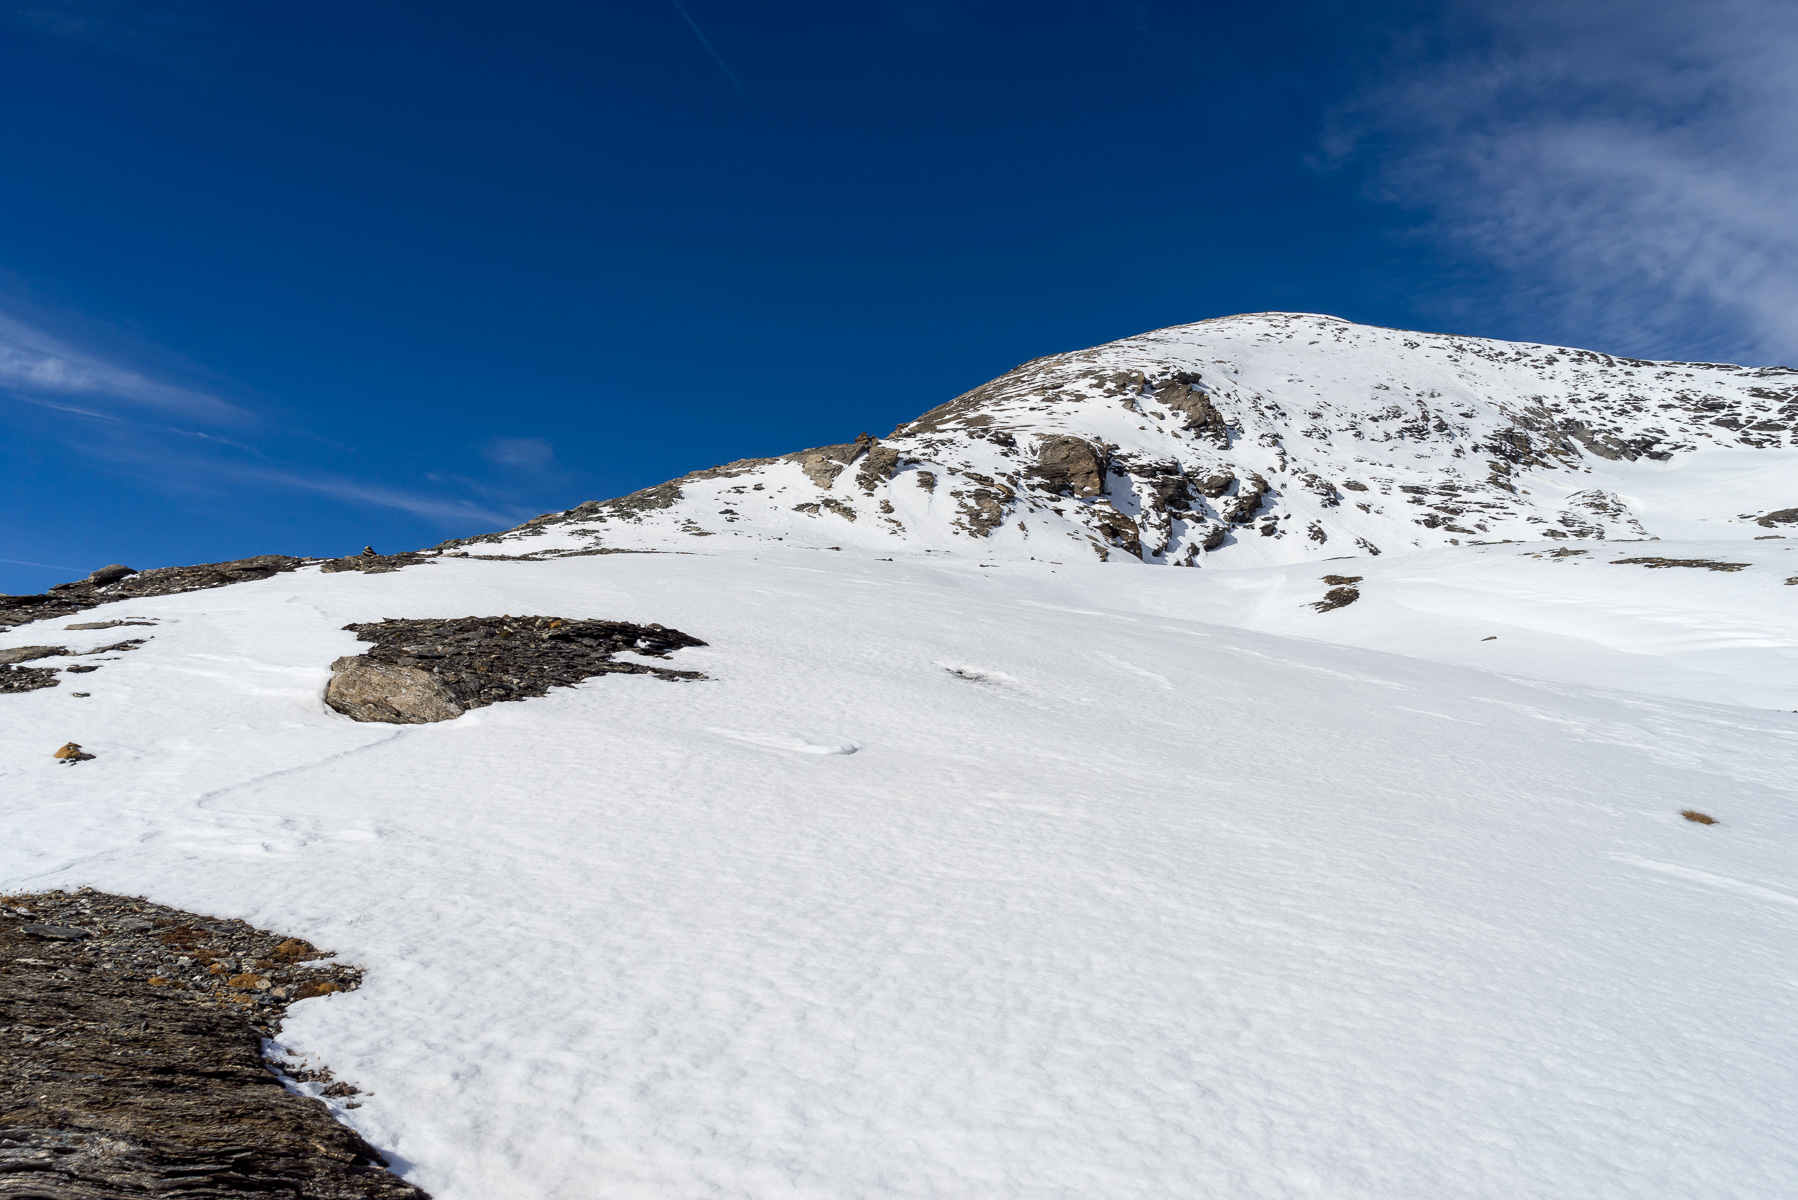 Am Fênetre Durand herrscht tiefster Winter und der Aufstieg tief verschneit.